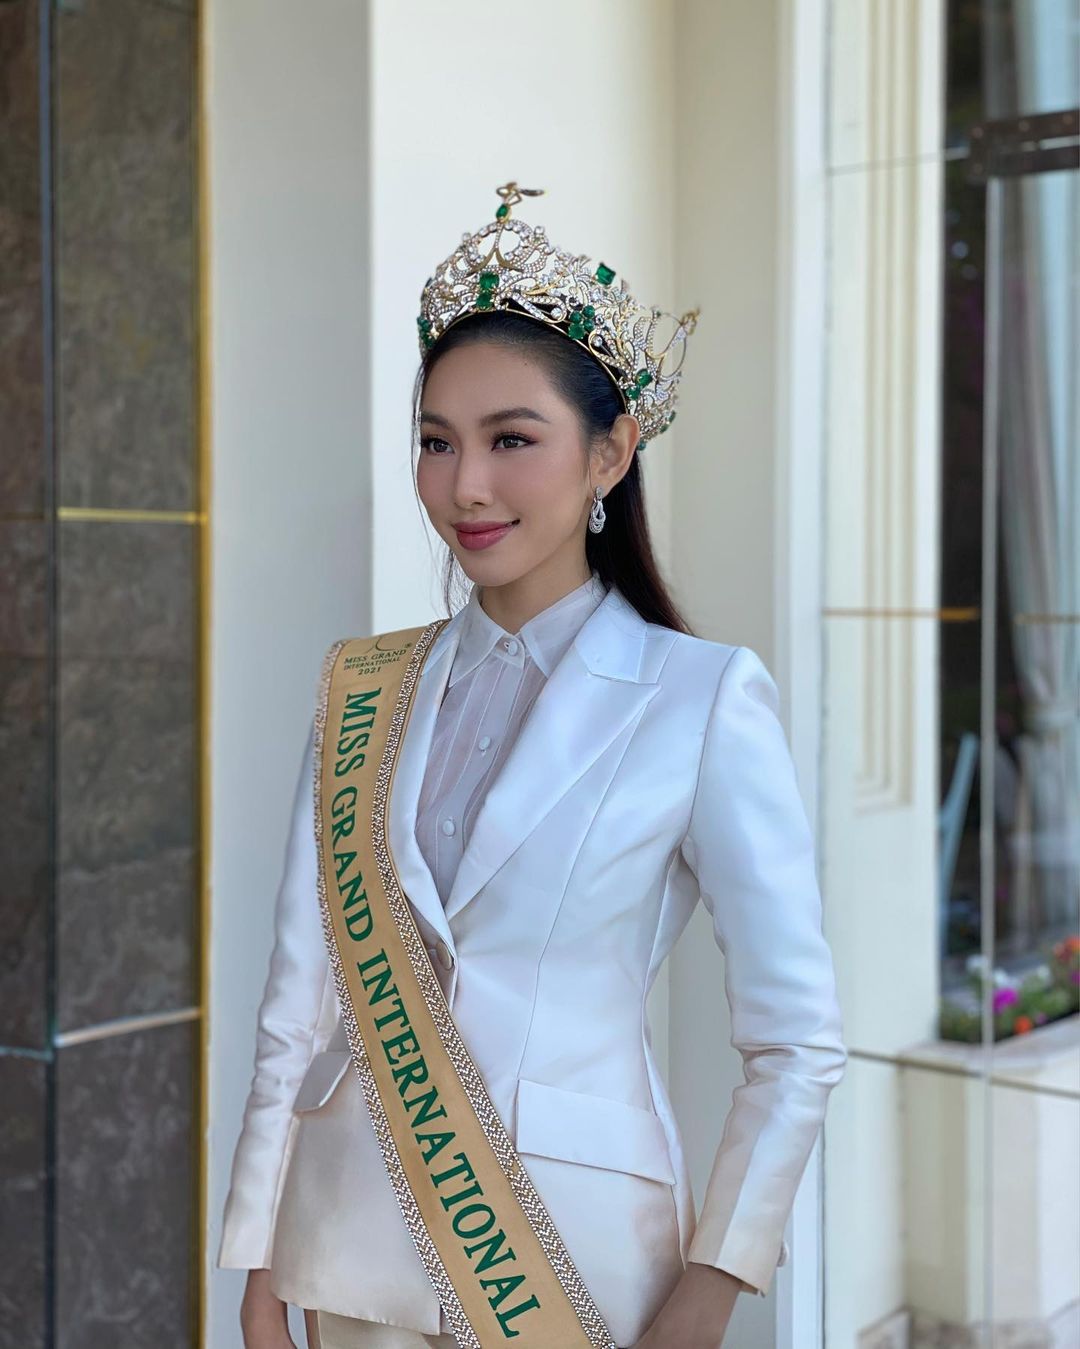 Ngắm hình Nguyễn Thúc Thùy Tiên miss international sexy đẹp nhìn là yêu